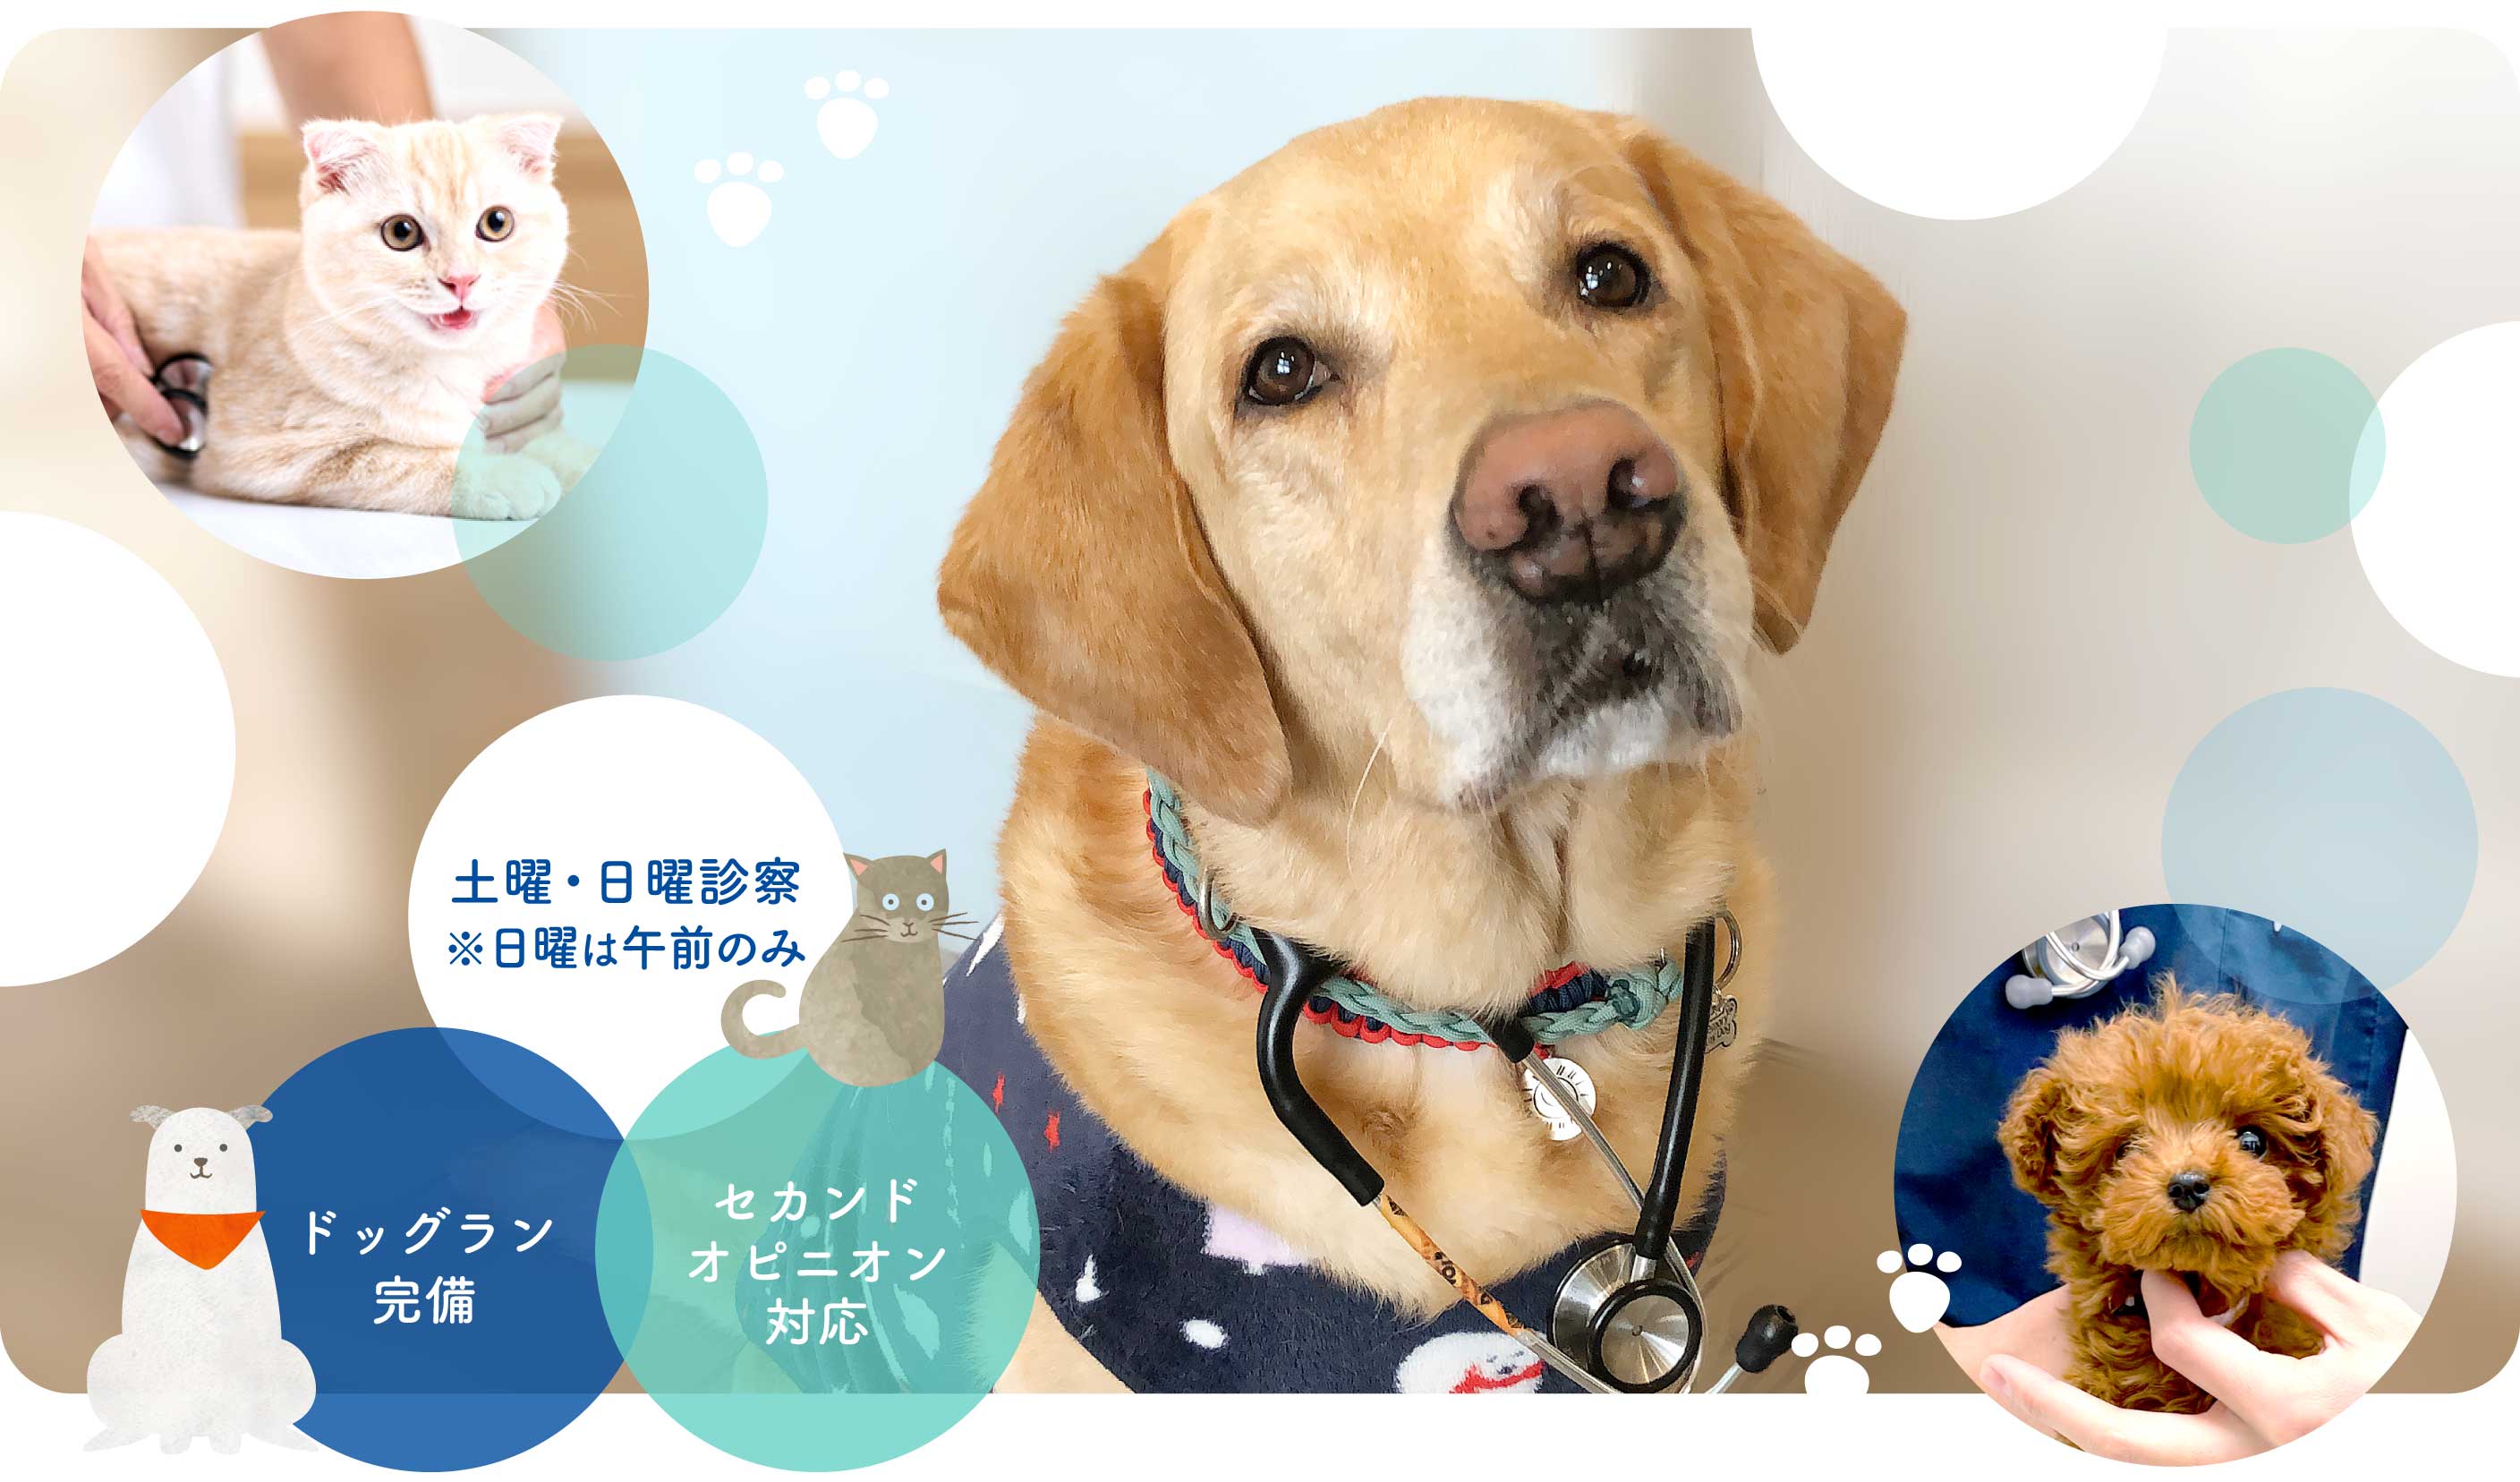 富田林市の動物病院なら『うぃっと動物病院』へ。日曜診療(午前)、セカンドオピニオン対応、ドッグラン完備です。